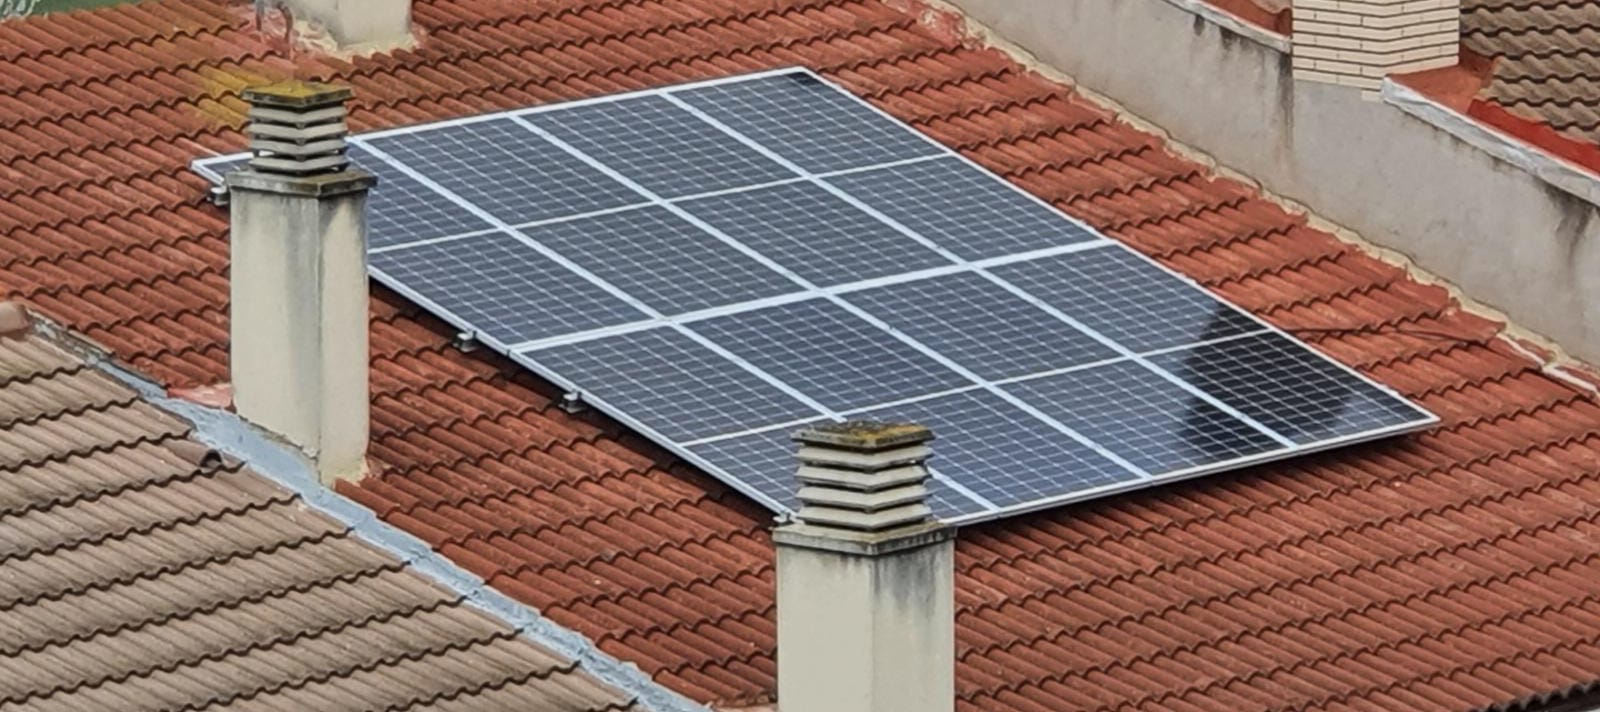 Sallent és un dels municipis de Catalunya amb més producció fotovoltaica d'autoconsum